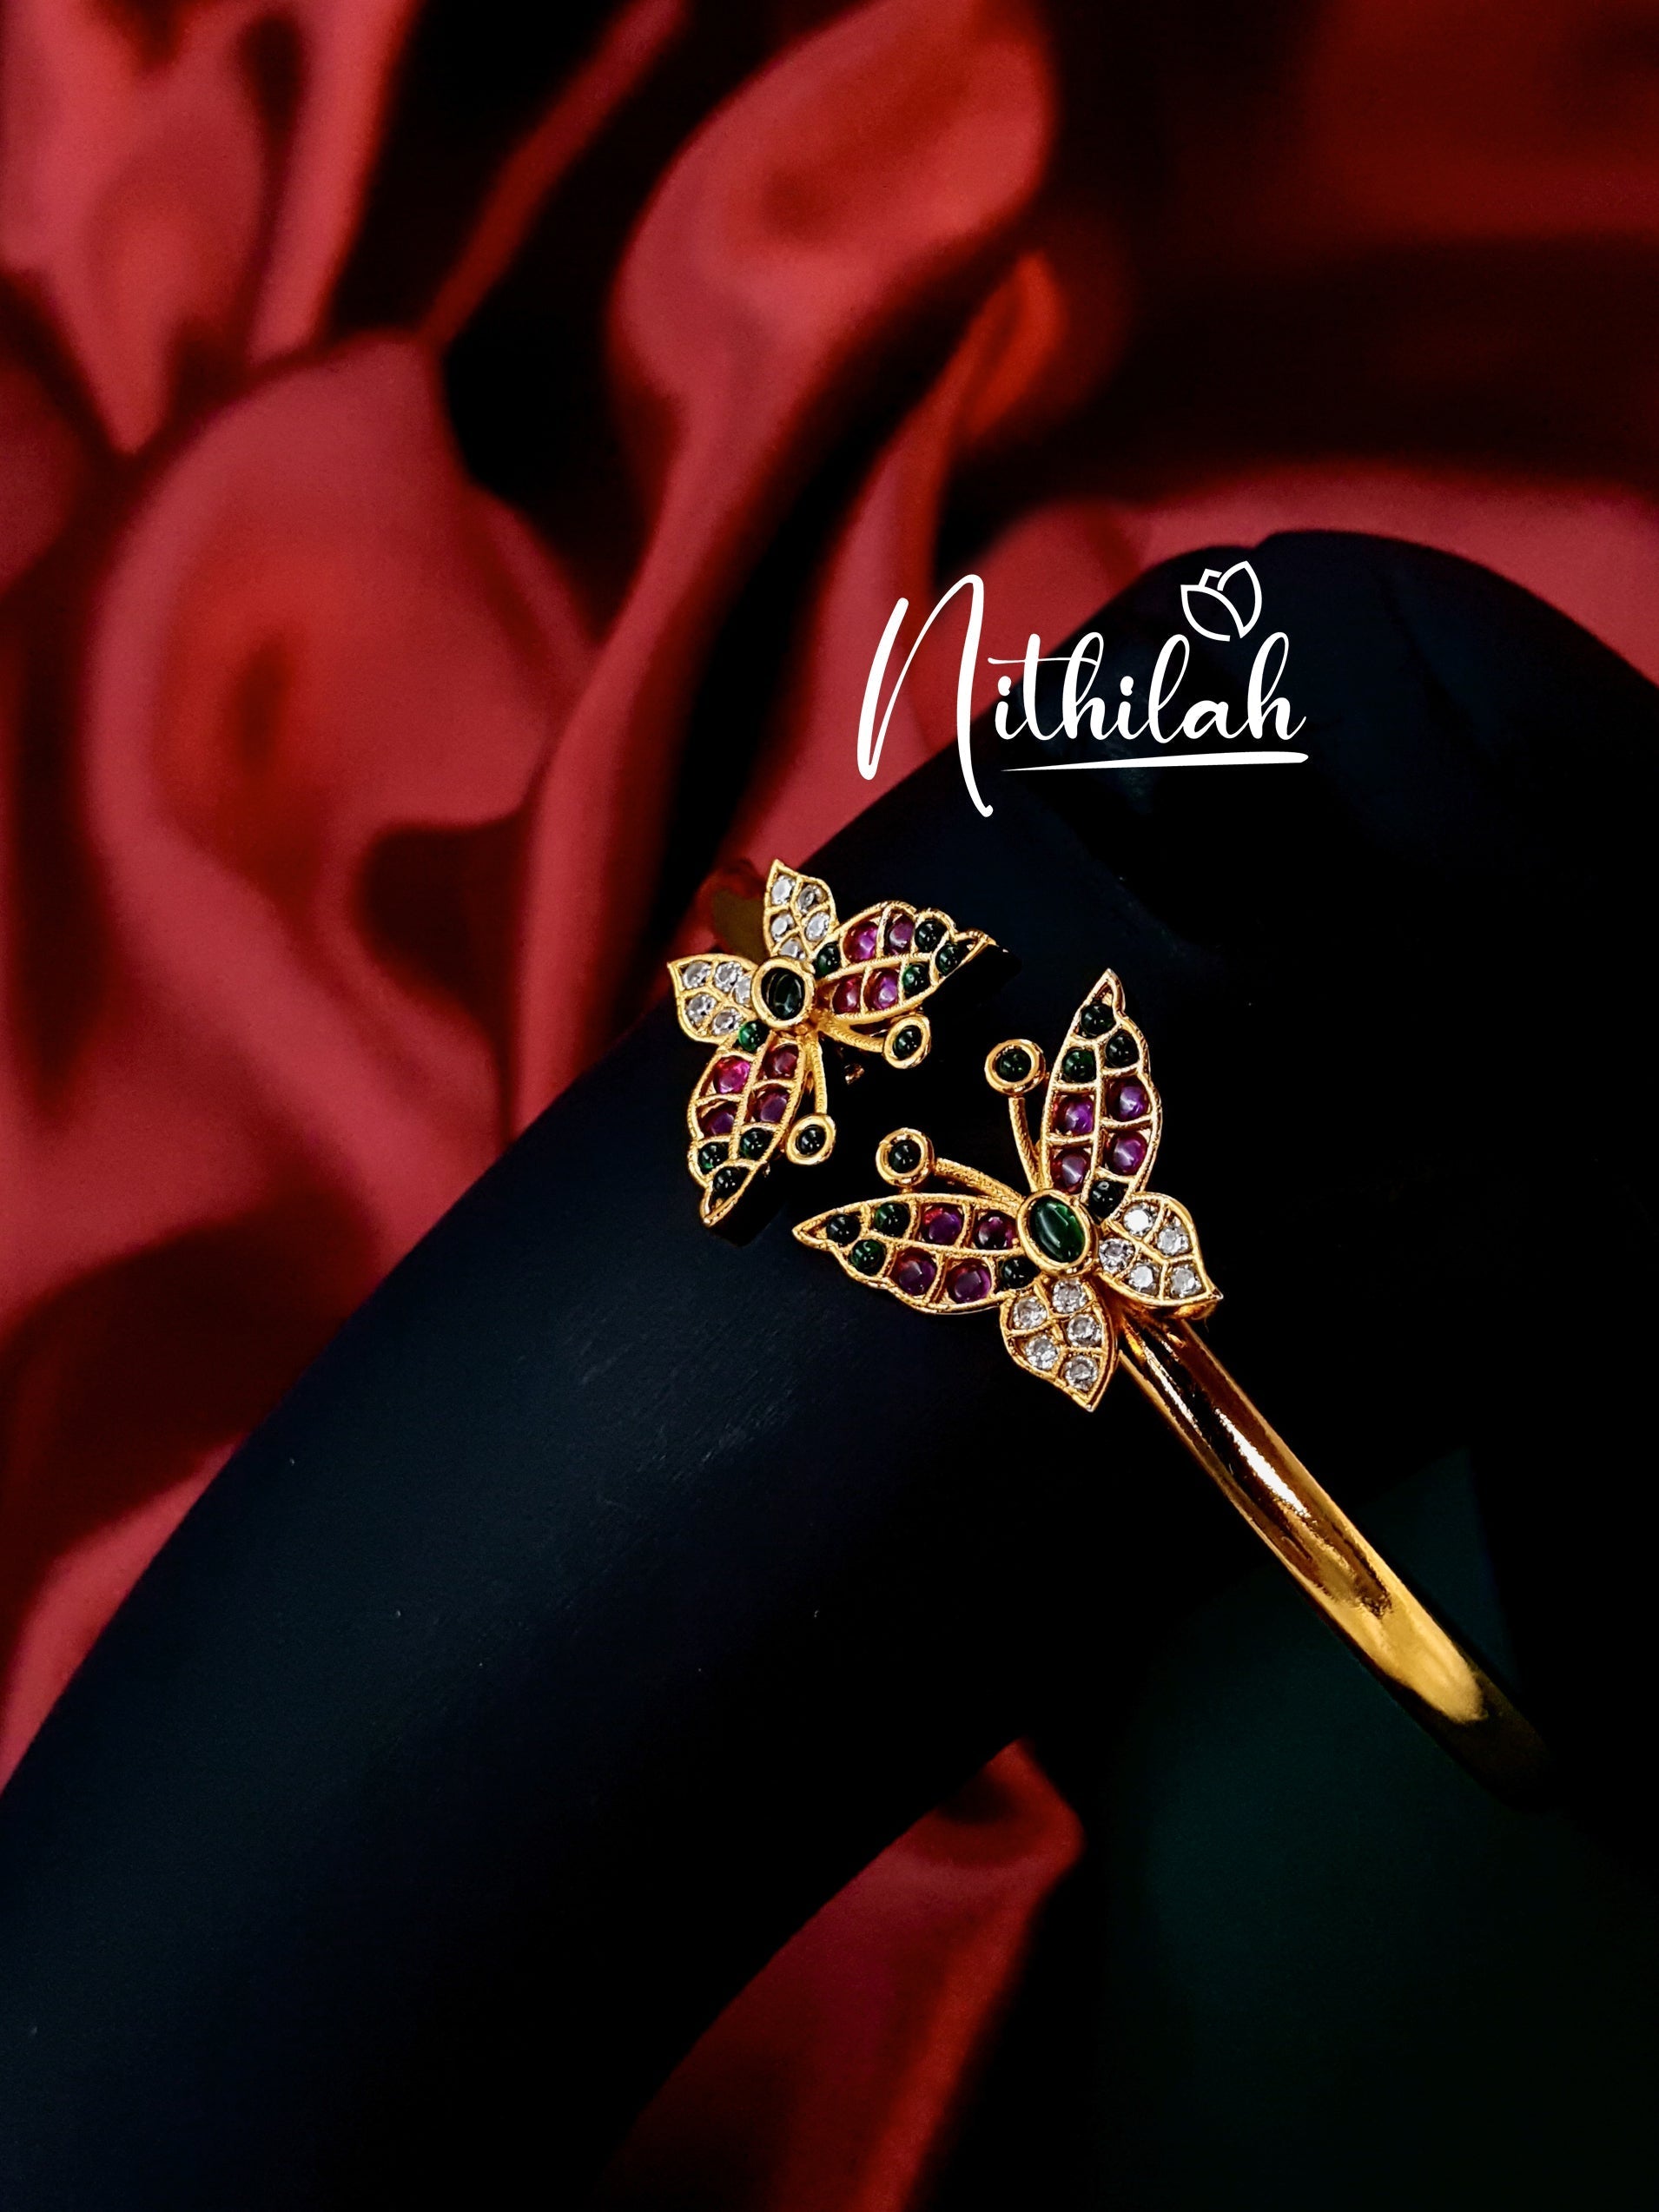 Buy Imitation Jewellery Gold Look alike Bracelet - Butterfly NCPL178 Online